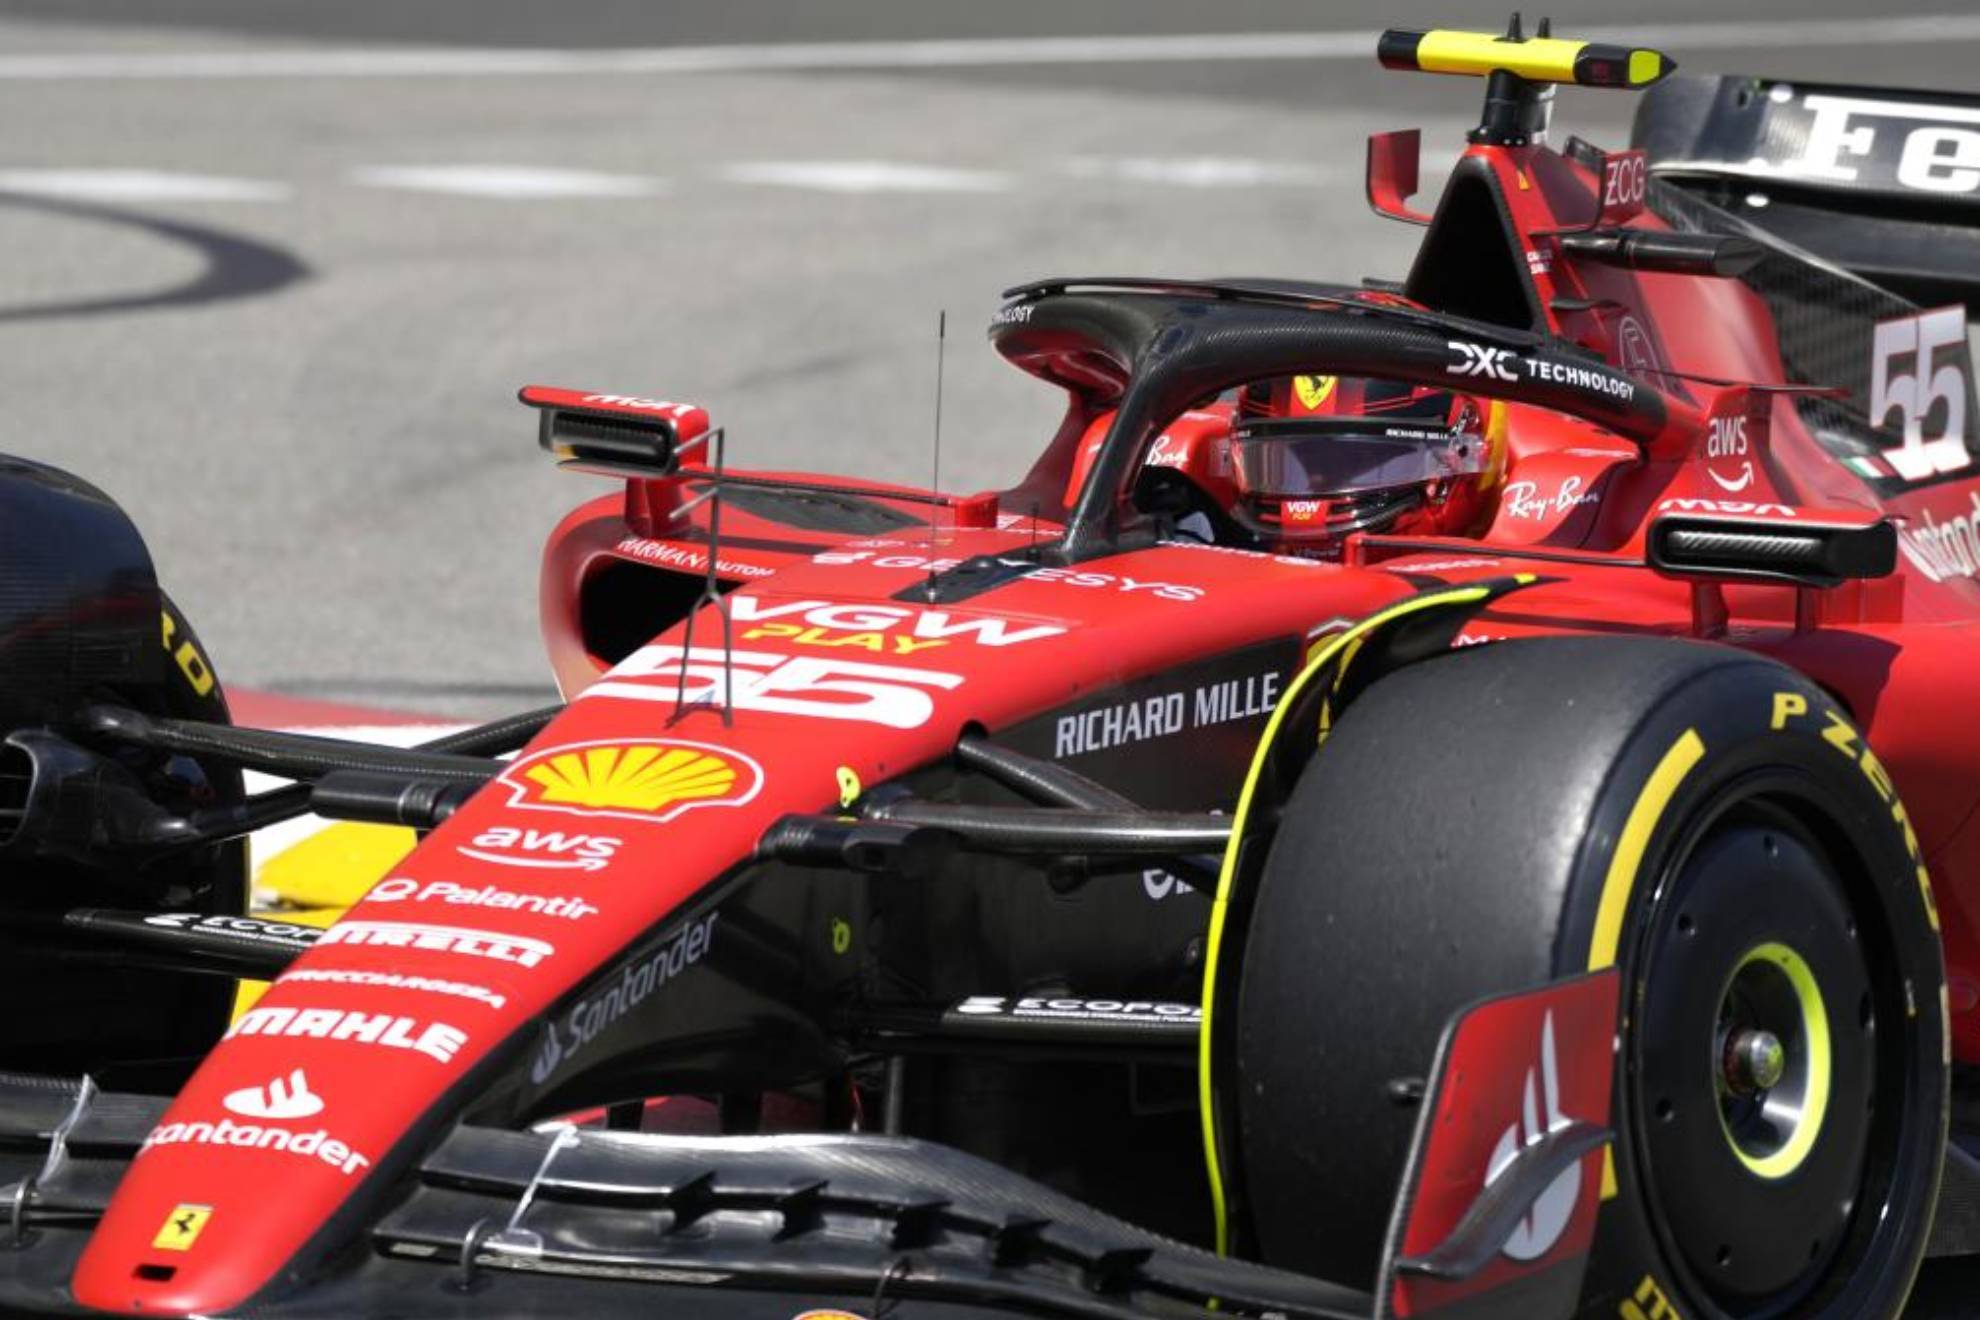 Carlos Sainz, claro dominador de los Libres 1 en Mónaco, por delante de Alonso